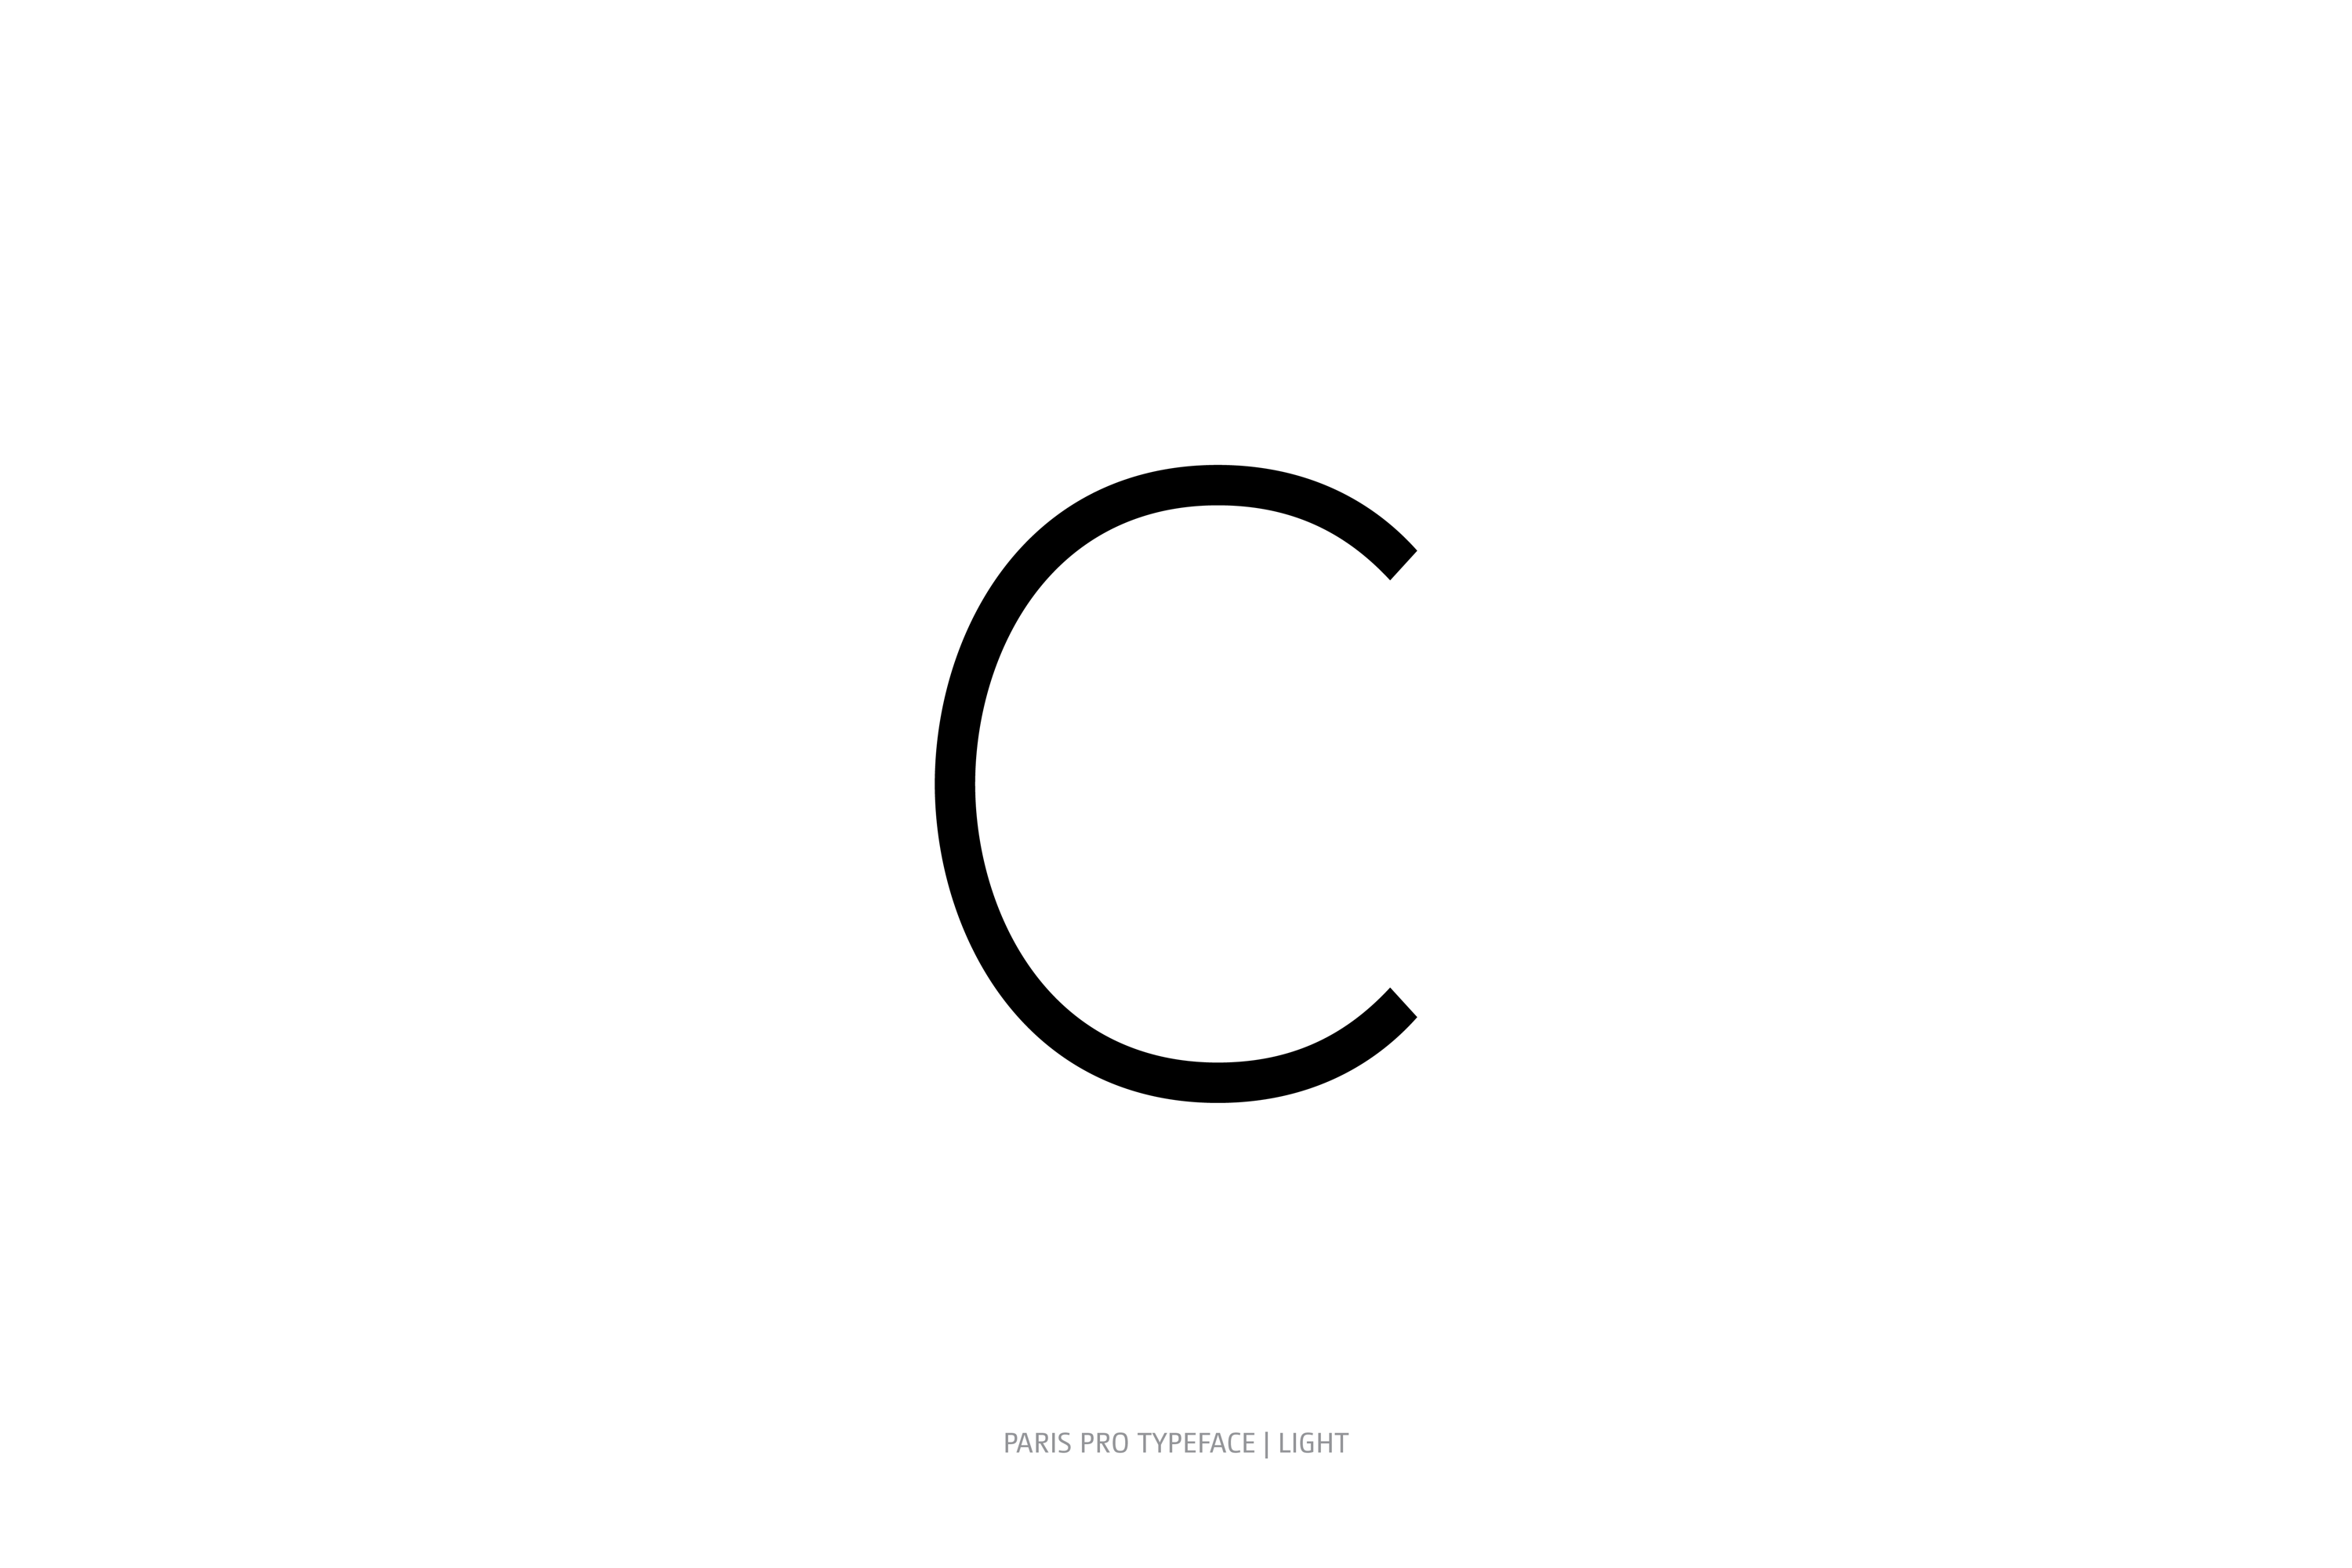 Paris Pro Typeface Light Style C